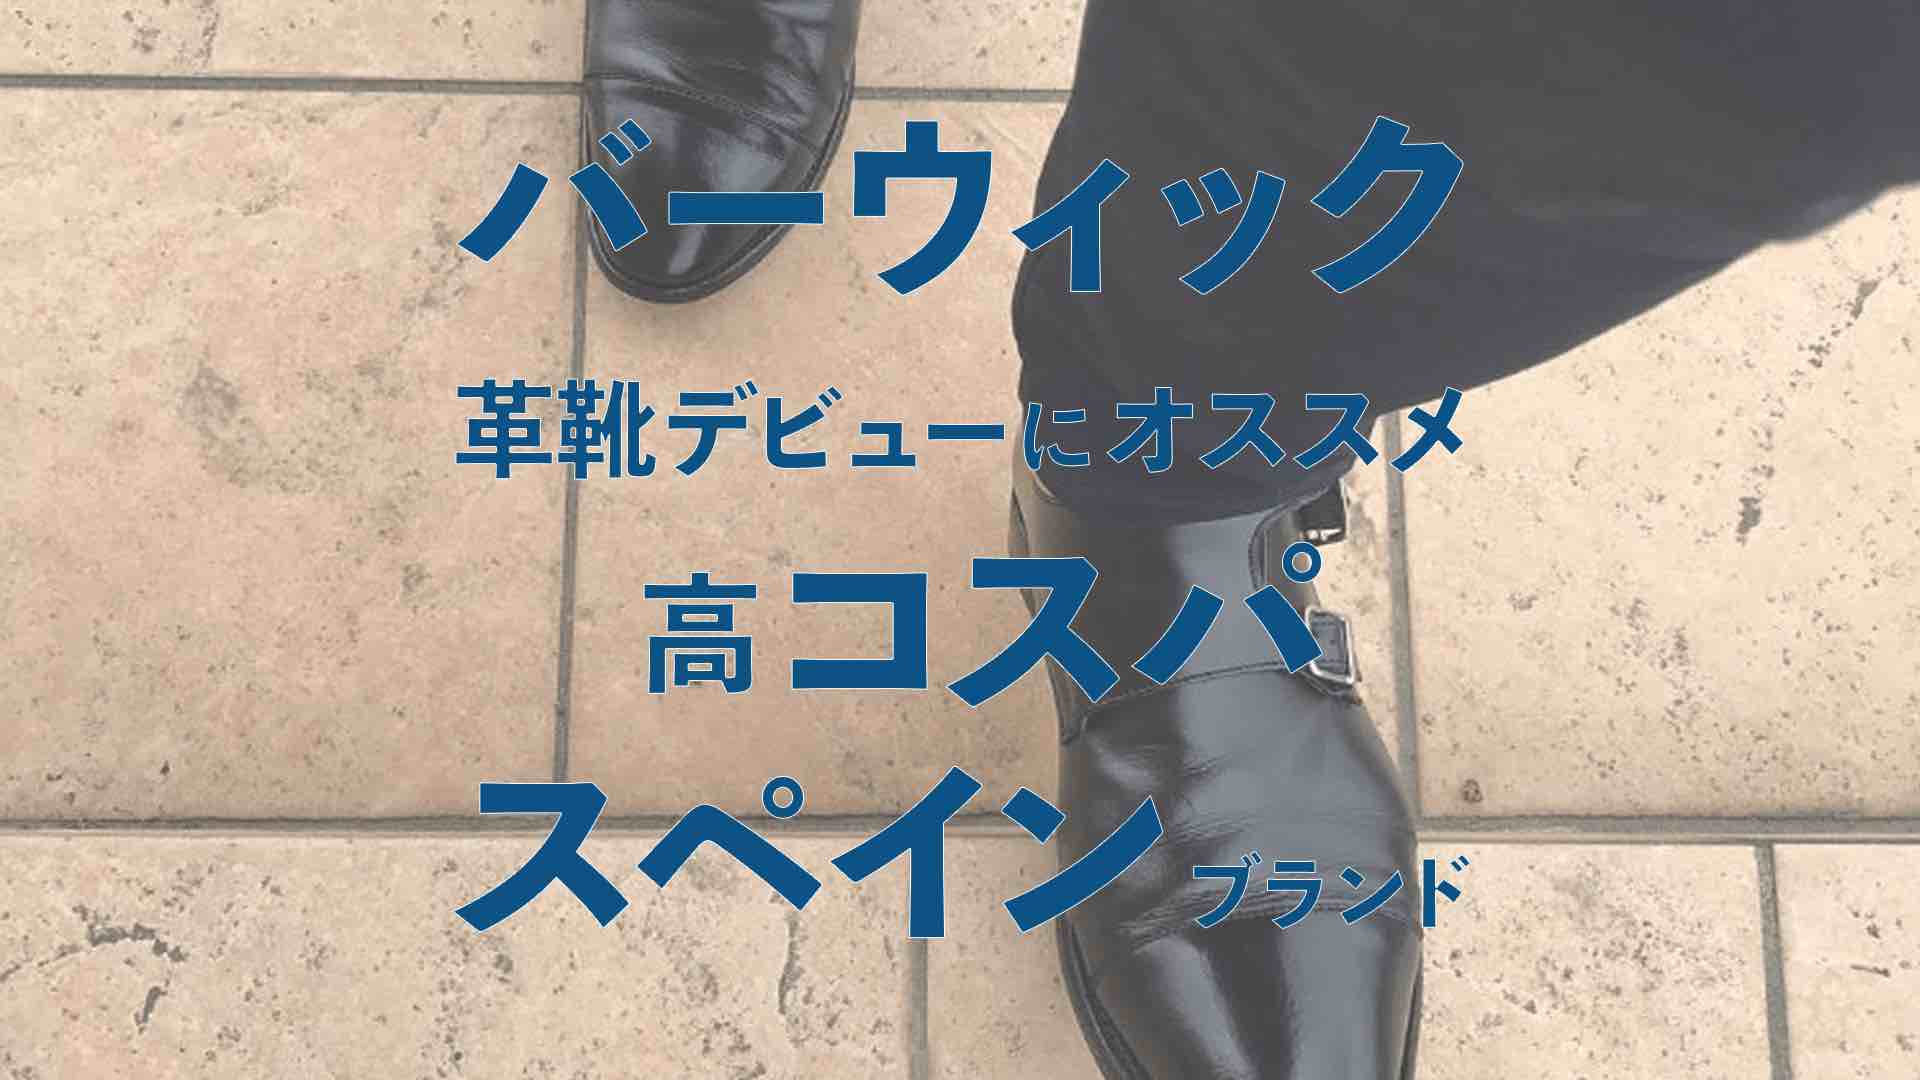 バーウィックの サイズ感 や 品質の評価 おすすめの高コスパ革靴 Kutsumedia クツメディア 革靴と靴磨きのブログメディア